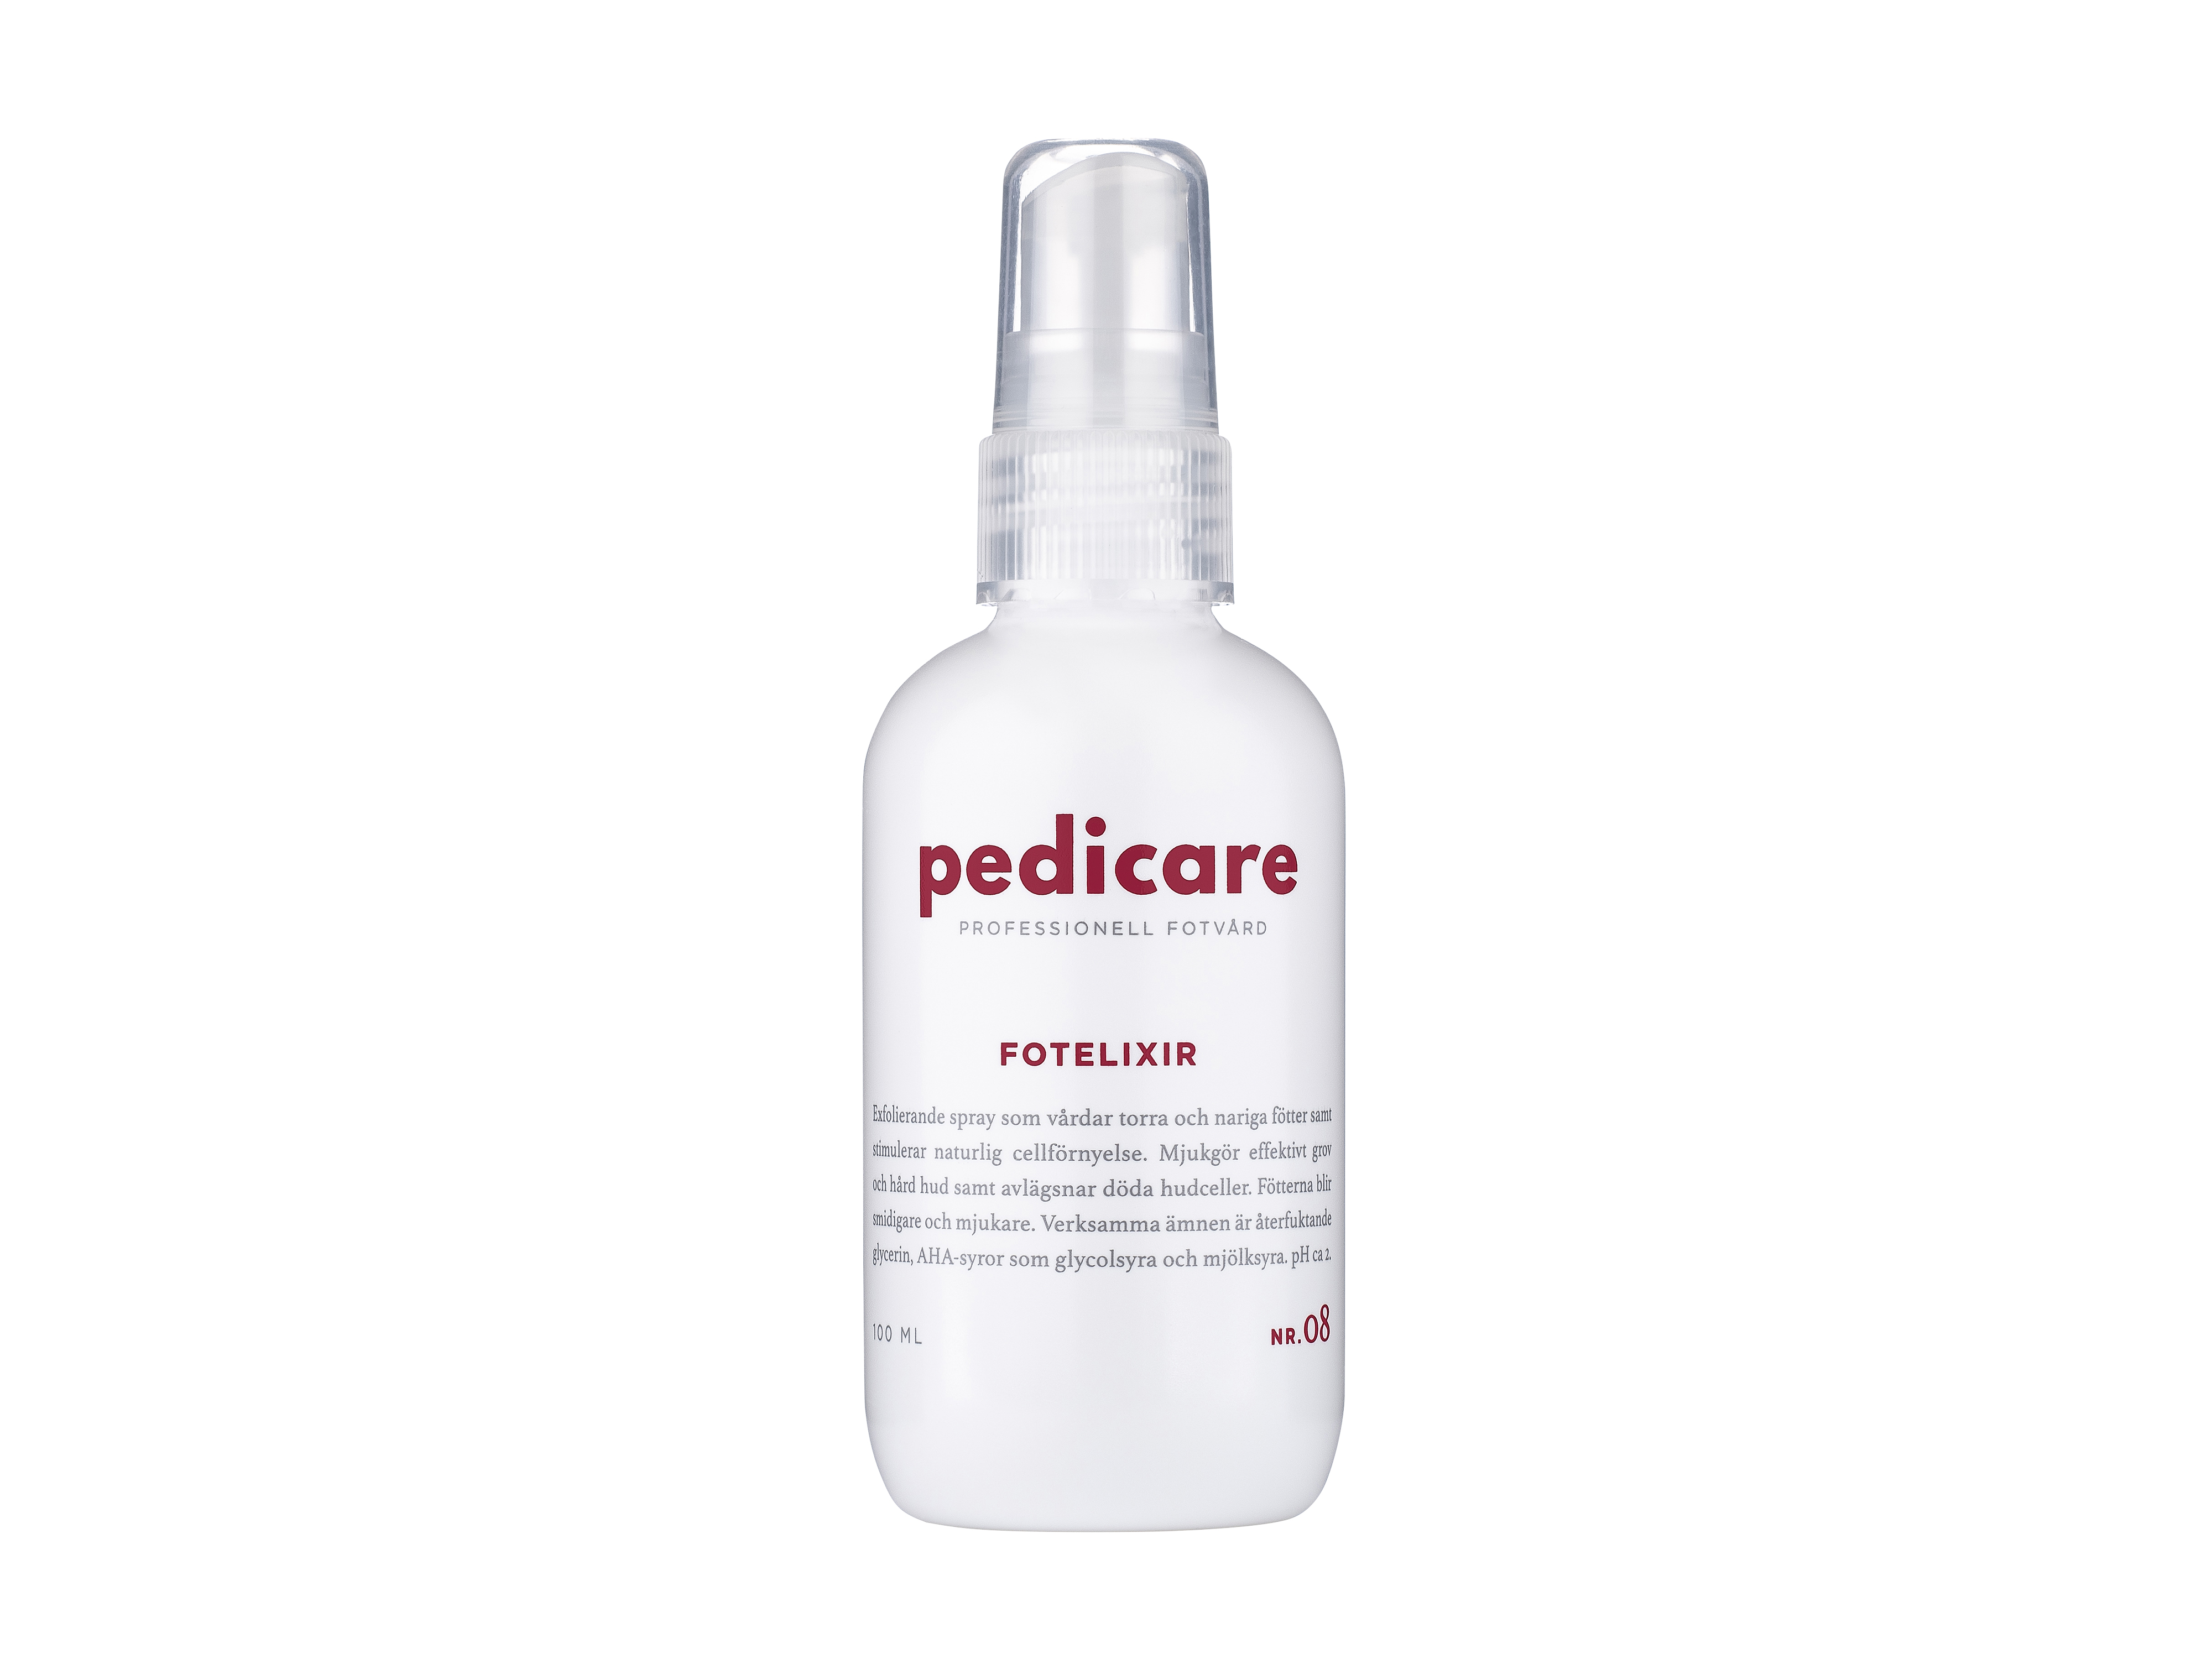 PediCare 08 FotElixir, 100 ml